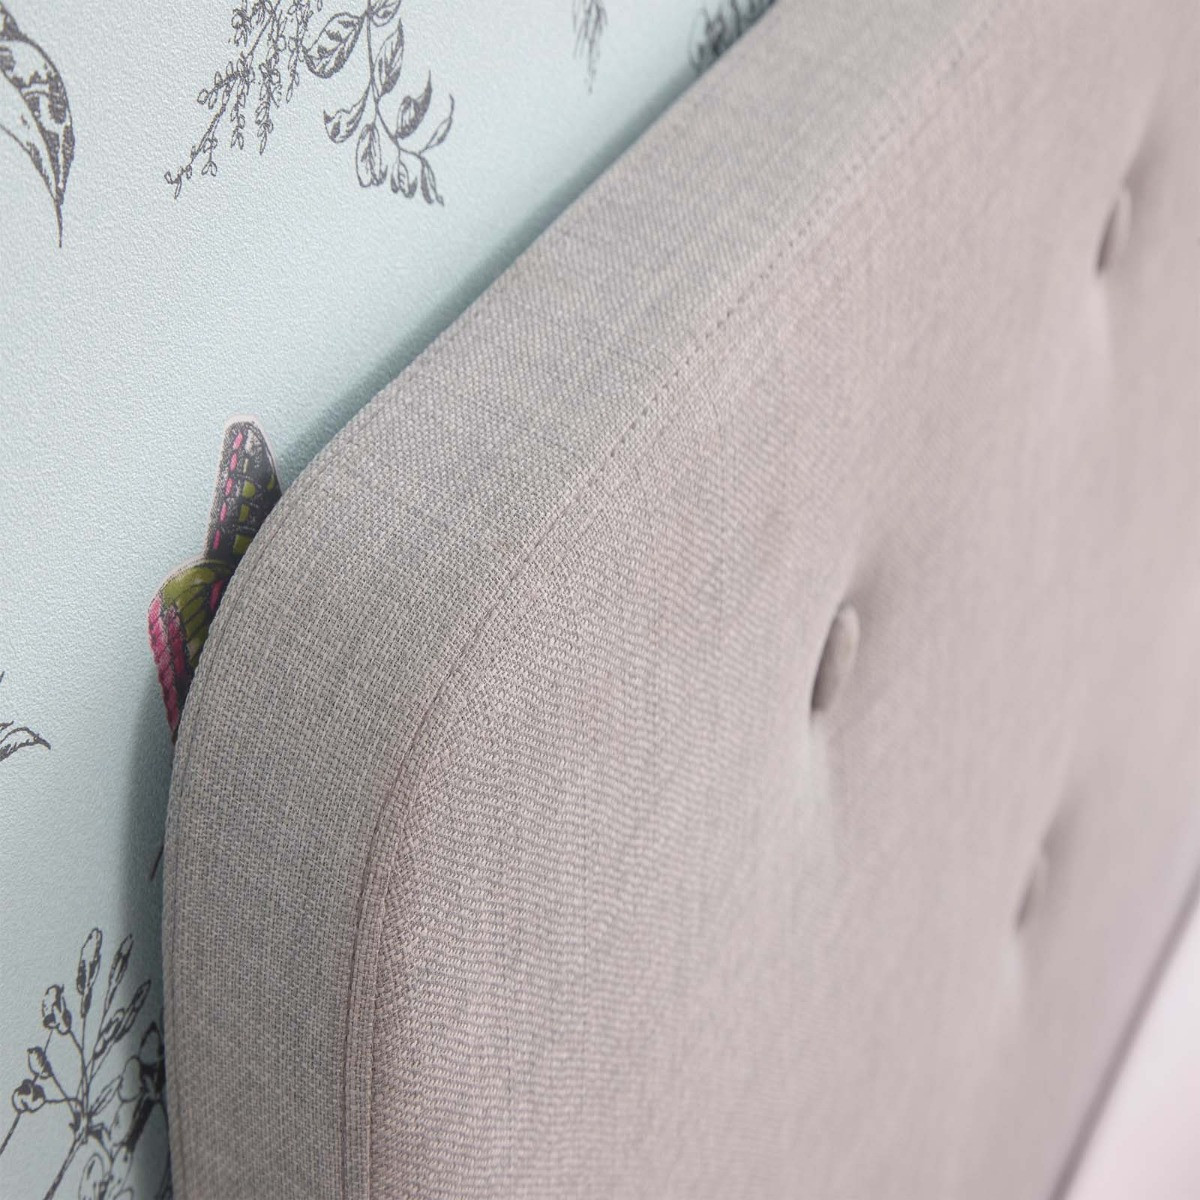 Ashbourne Upholstered Fabric Bed Frame - Light Grey>